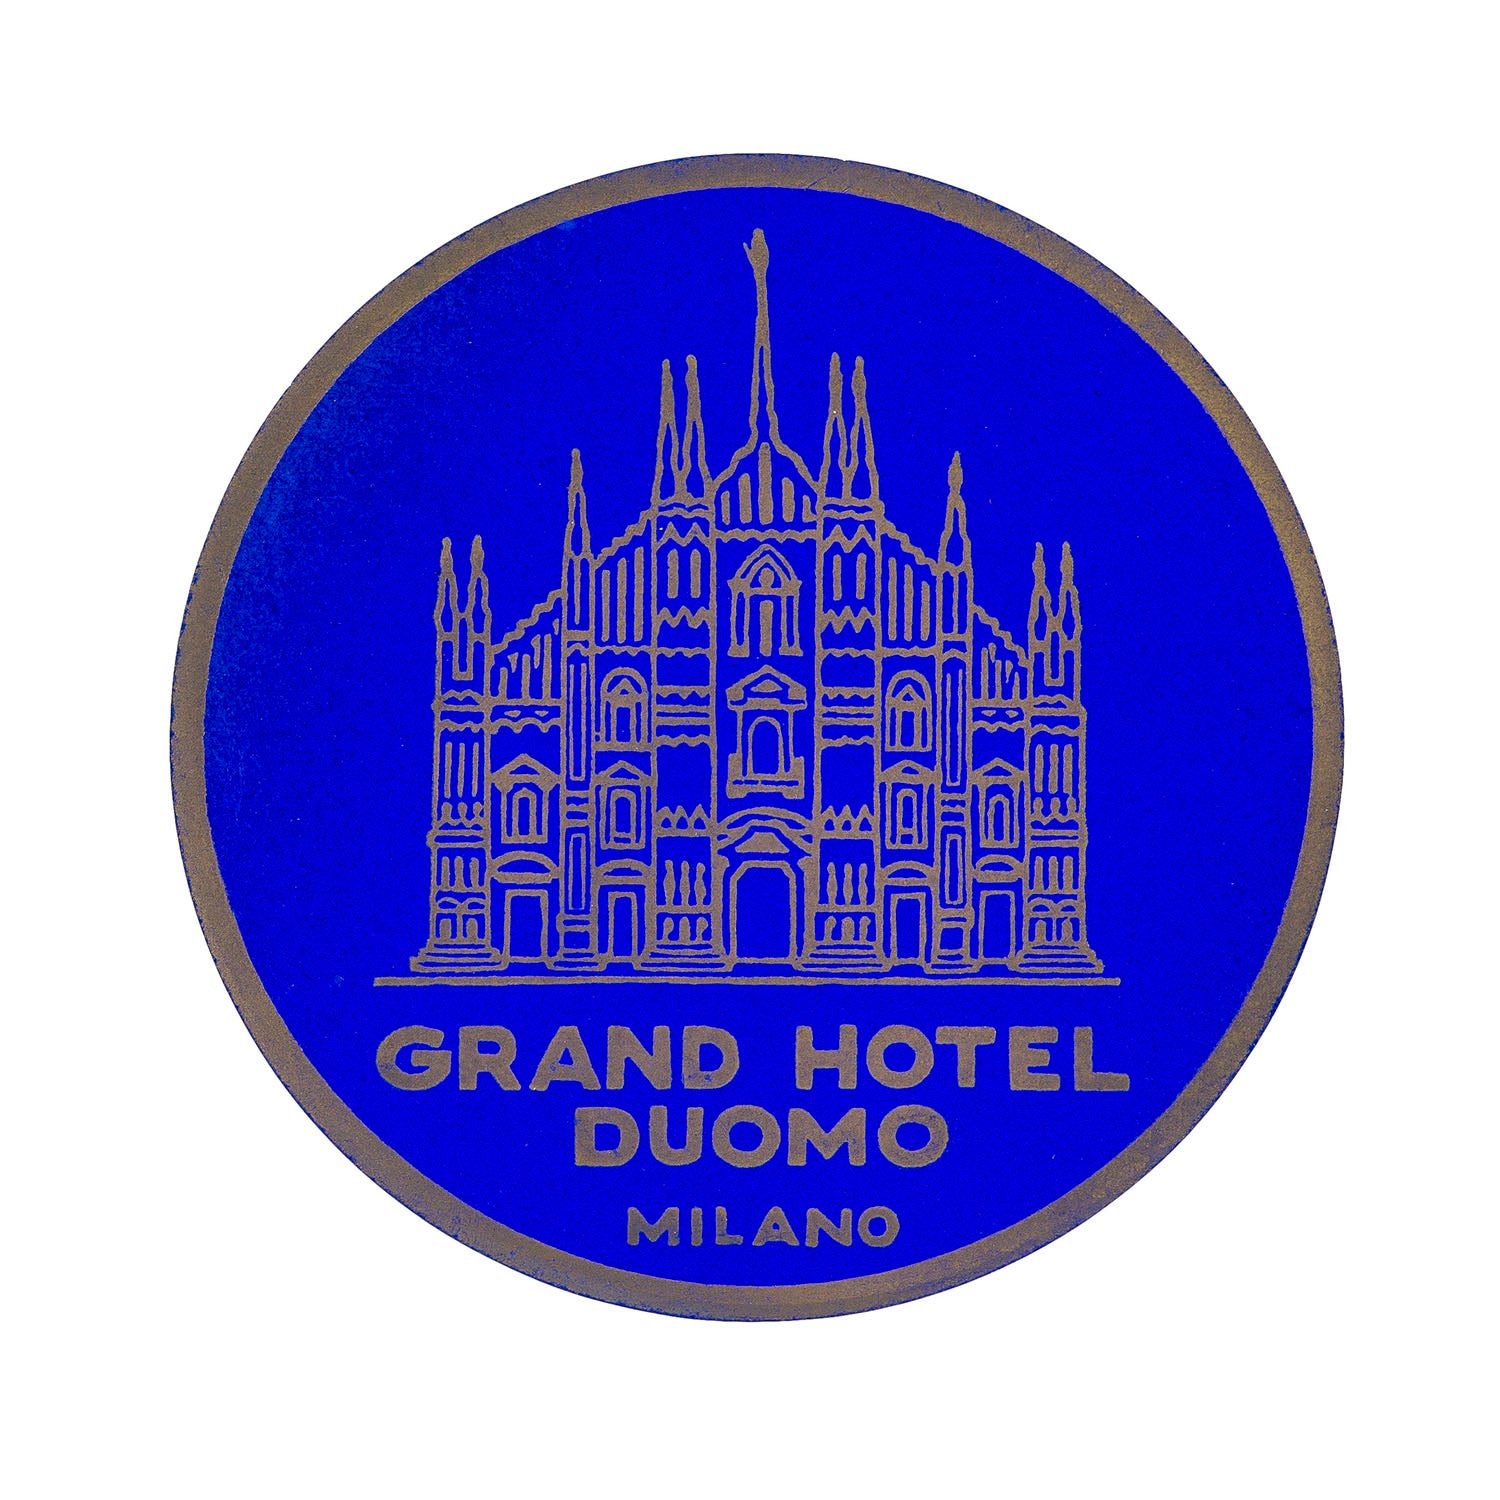 Grand Hotel Duomo, Milano (Luggage Label)